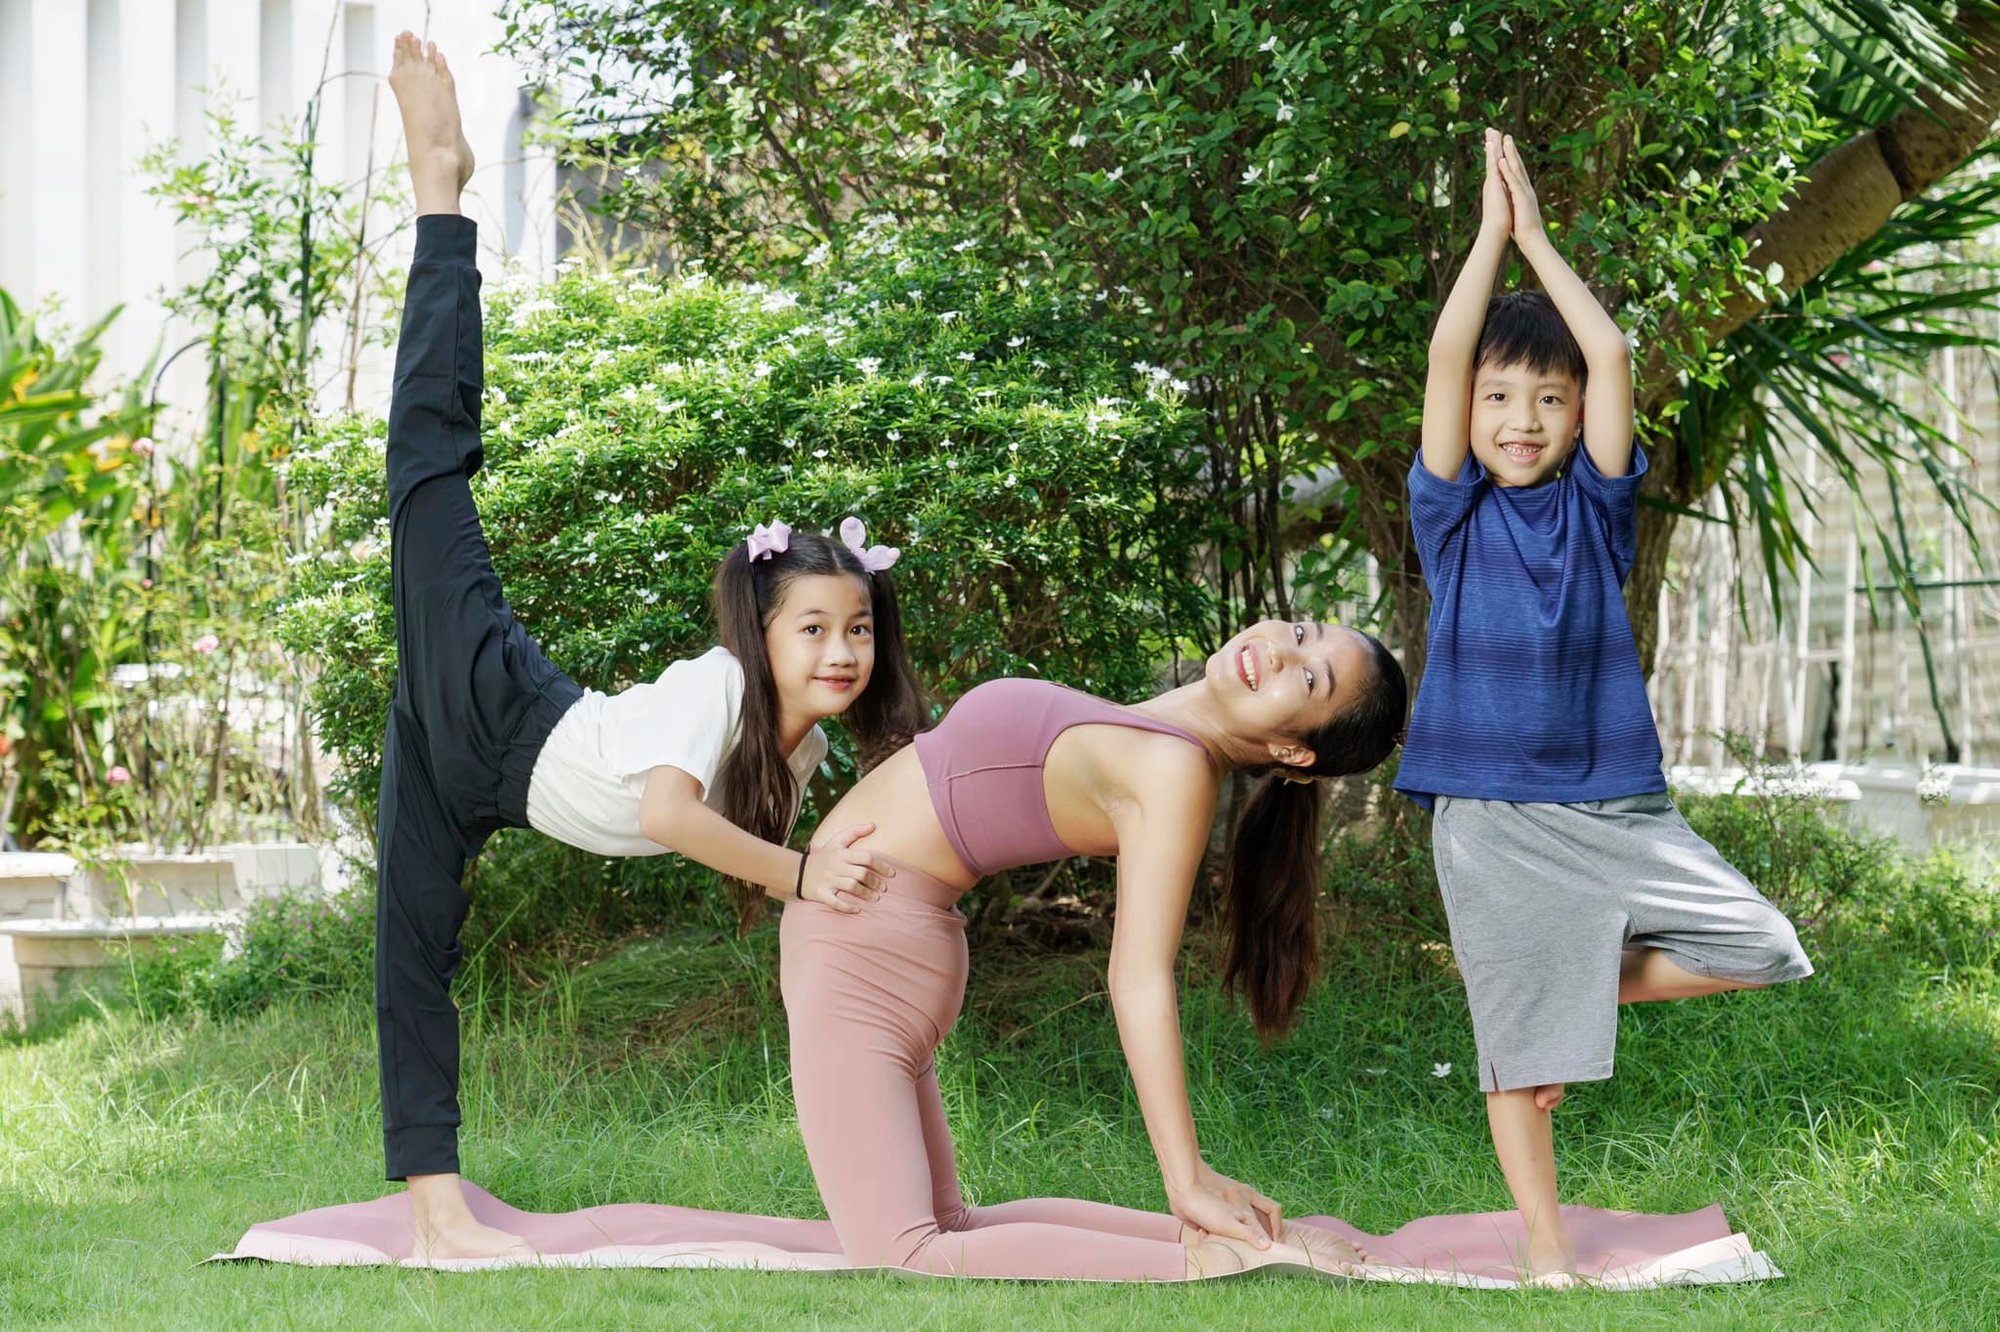 Ốc Thanh Vân chuyển hướng thành HLV yoga sau 20 năm làm nghệ thuật, cuộc sống hiện tại ra sao?  - Ảnh 4.